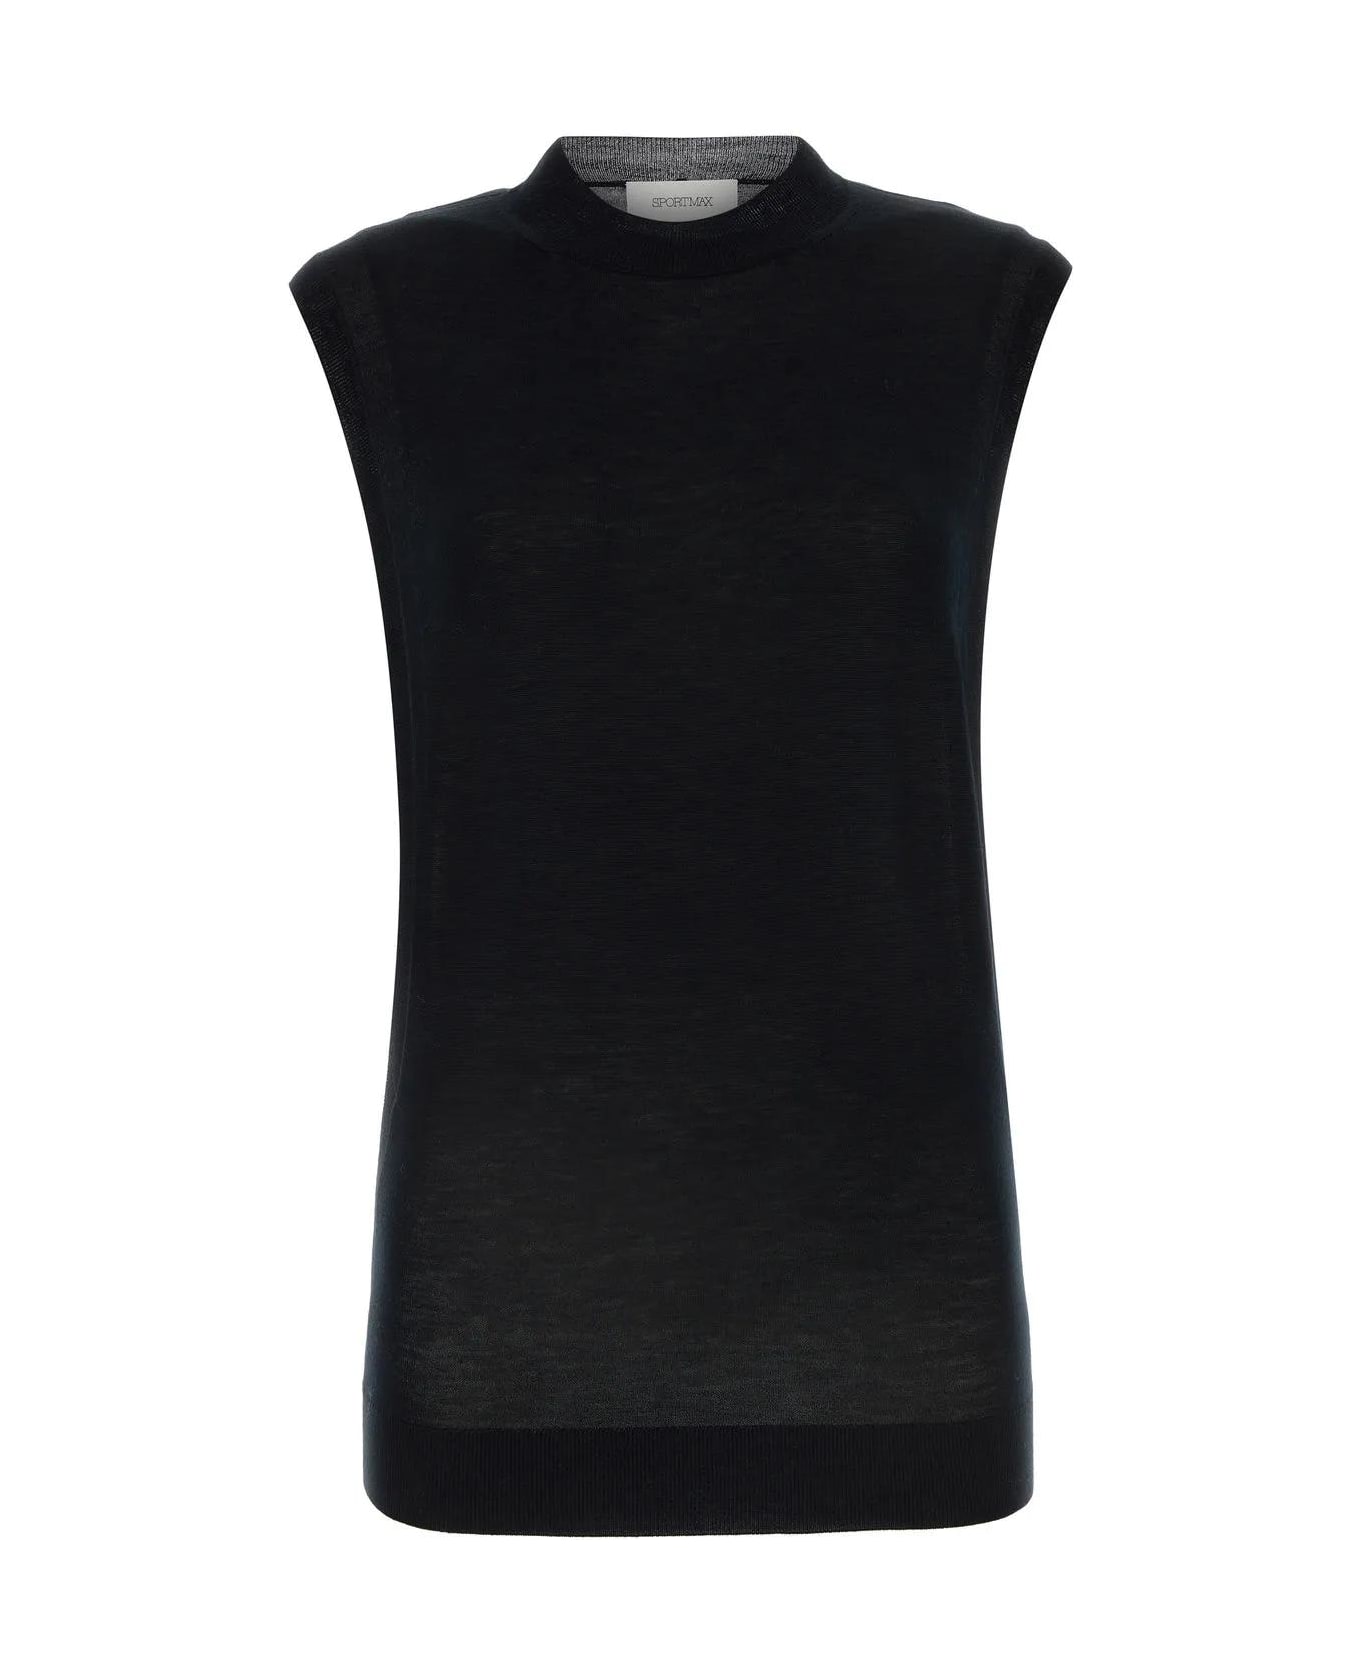 SportMax Black Wool Blend Odissea Top - BLACK